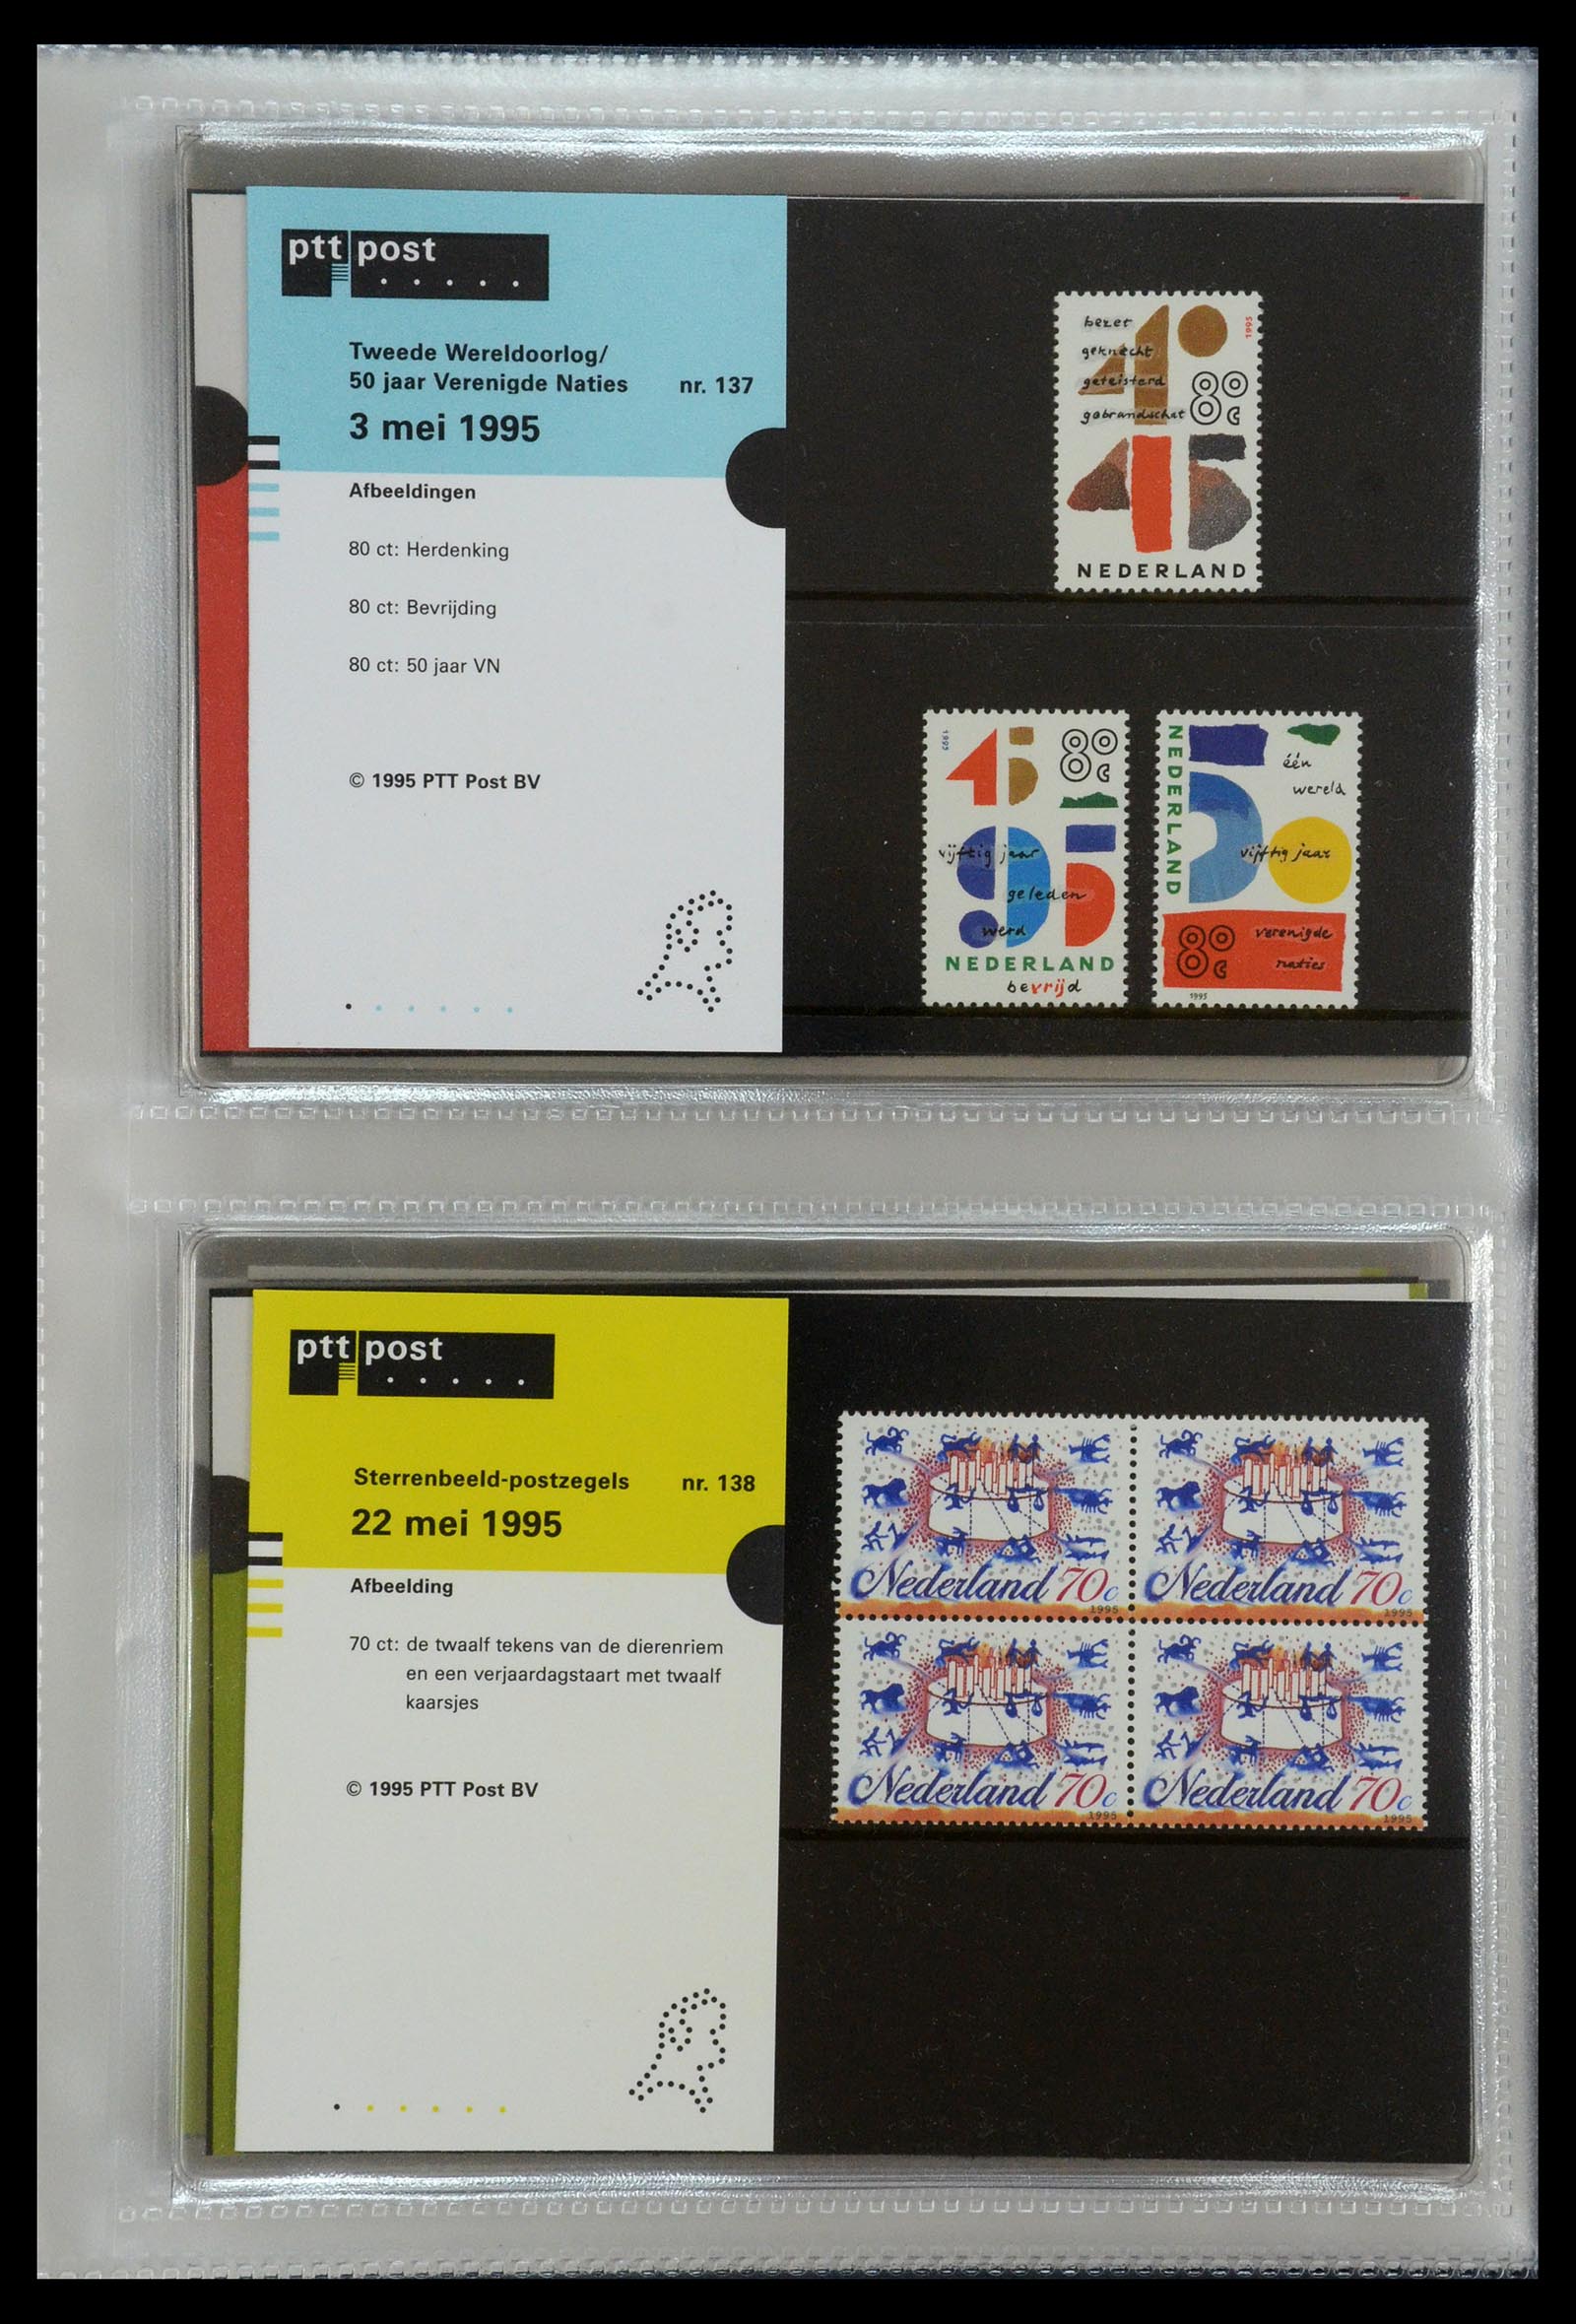 35144 070 - Stamp Collection 35144 Netherlands PTT presentation packs 1982-2021!